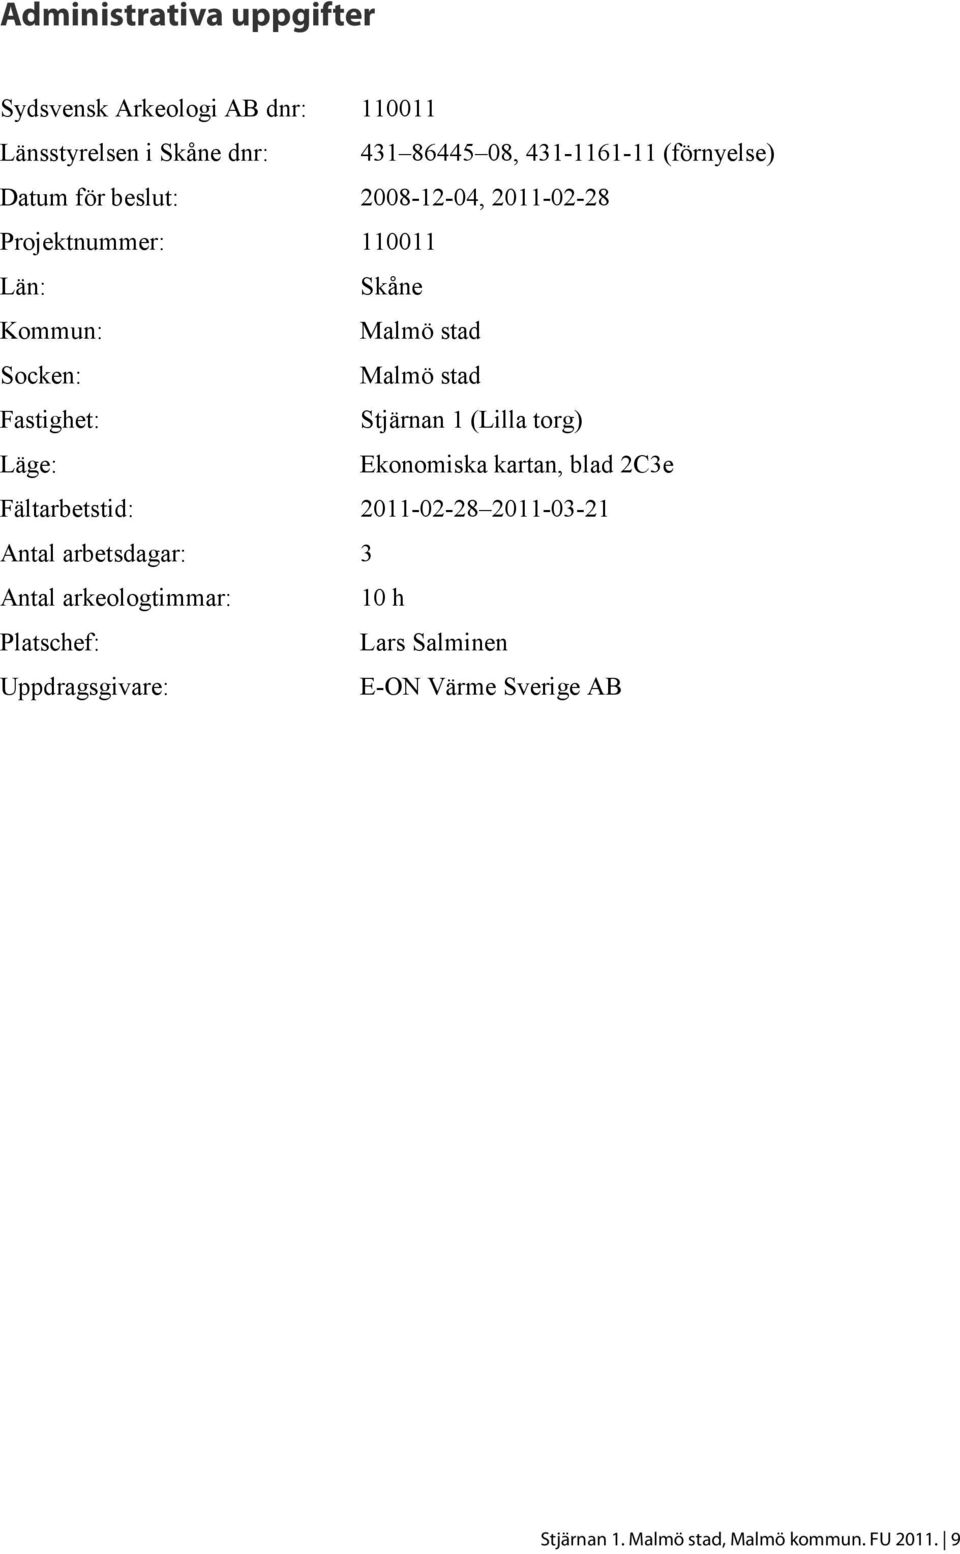 Stjärnan 1 (Lilla torg) Läge: Ekonomiska kartan, blad 2C3e Fältarbetstid: 2011-02-28 2011-03-21 Antal arbetsdagar: 3 Antal